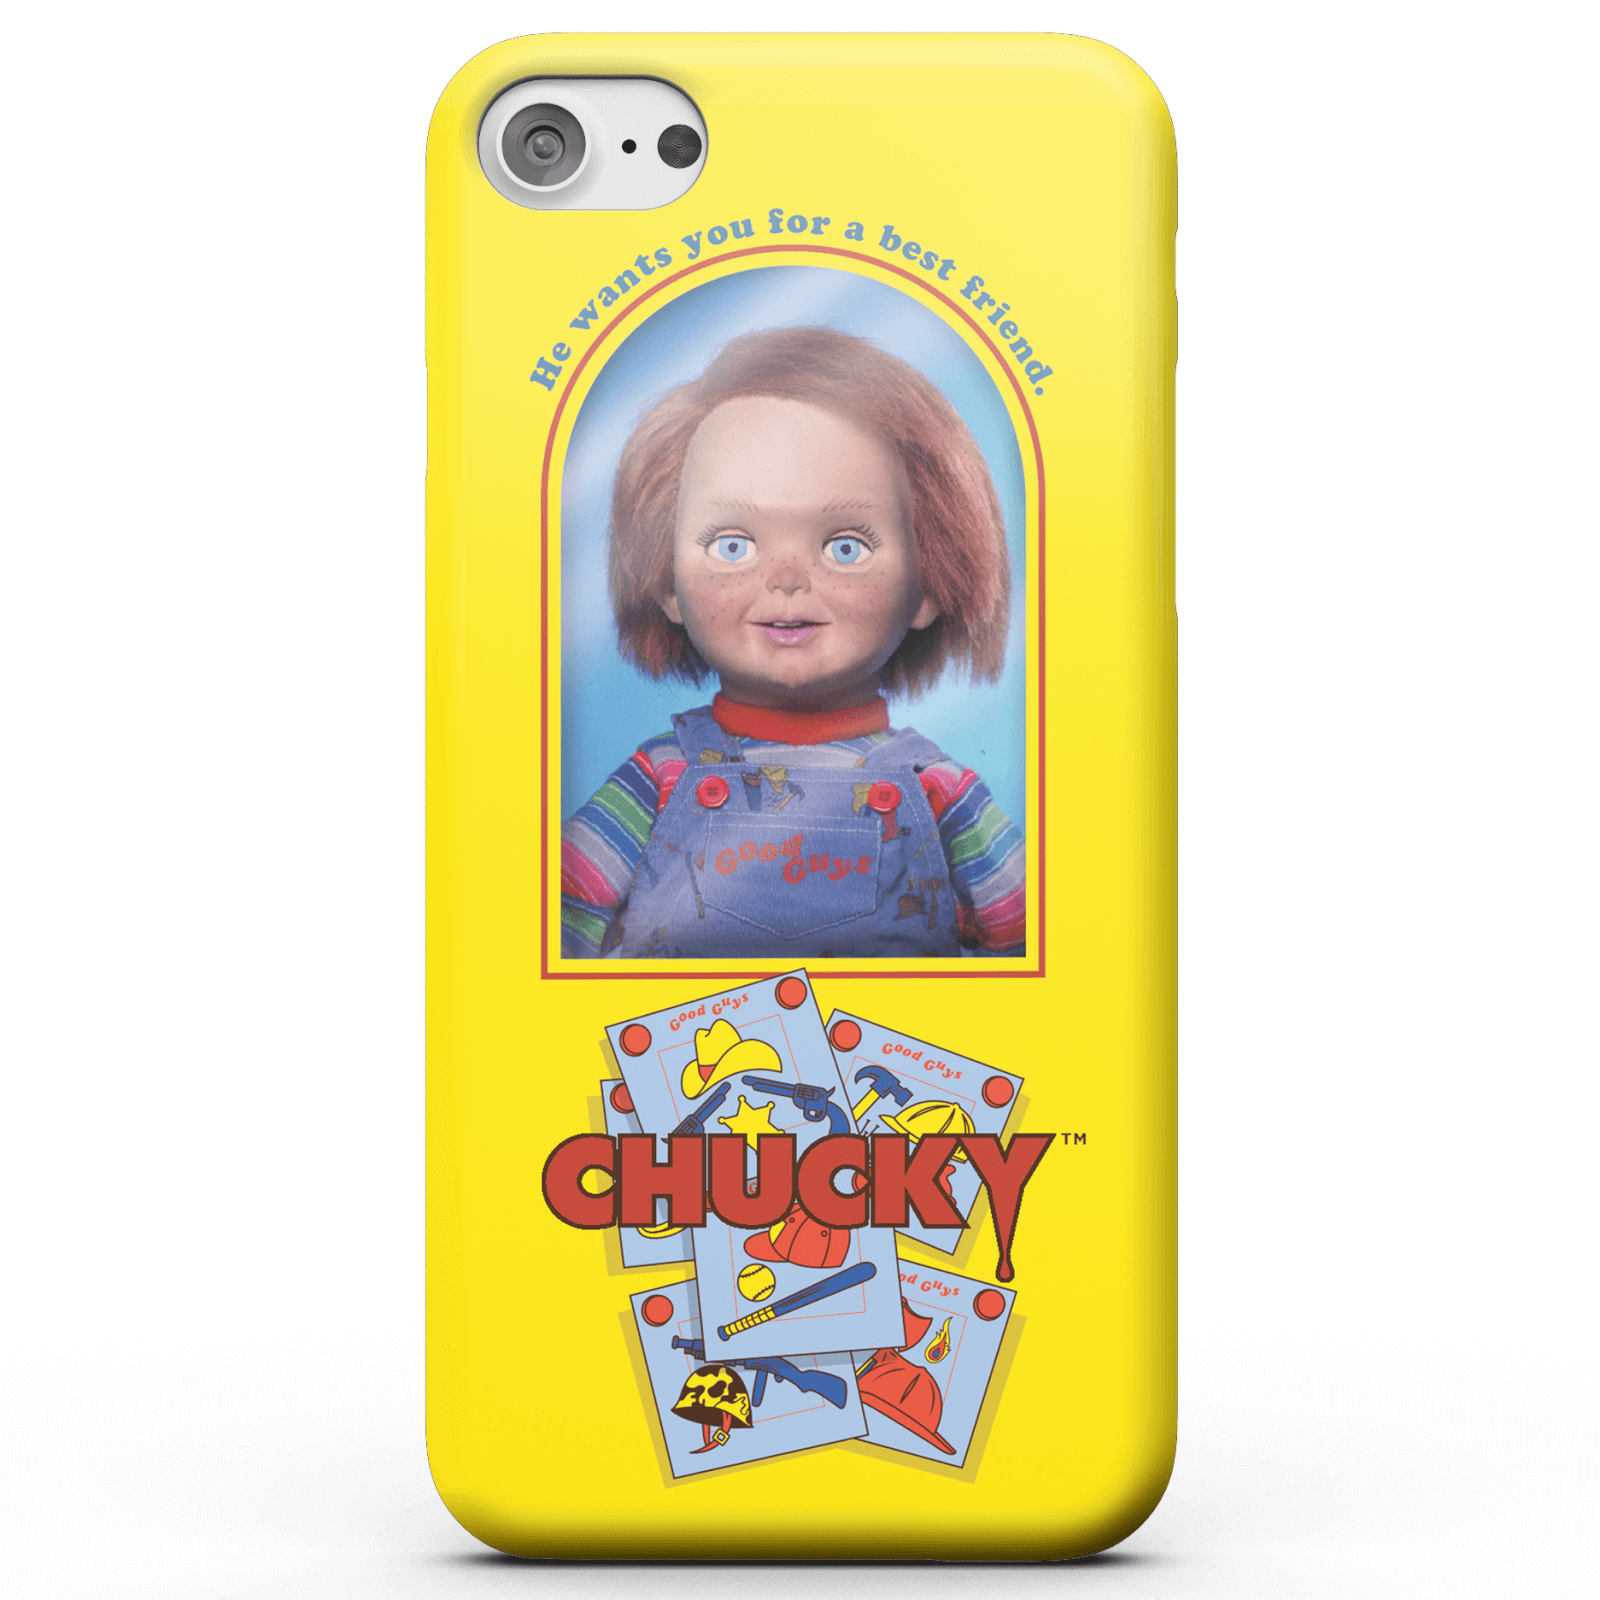 Funda Móvil Chucky Good Guys Doll para iPhone y Android - Samsung S7 Edge - Carcasa rígida - Mate